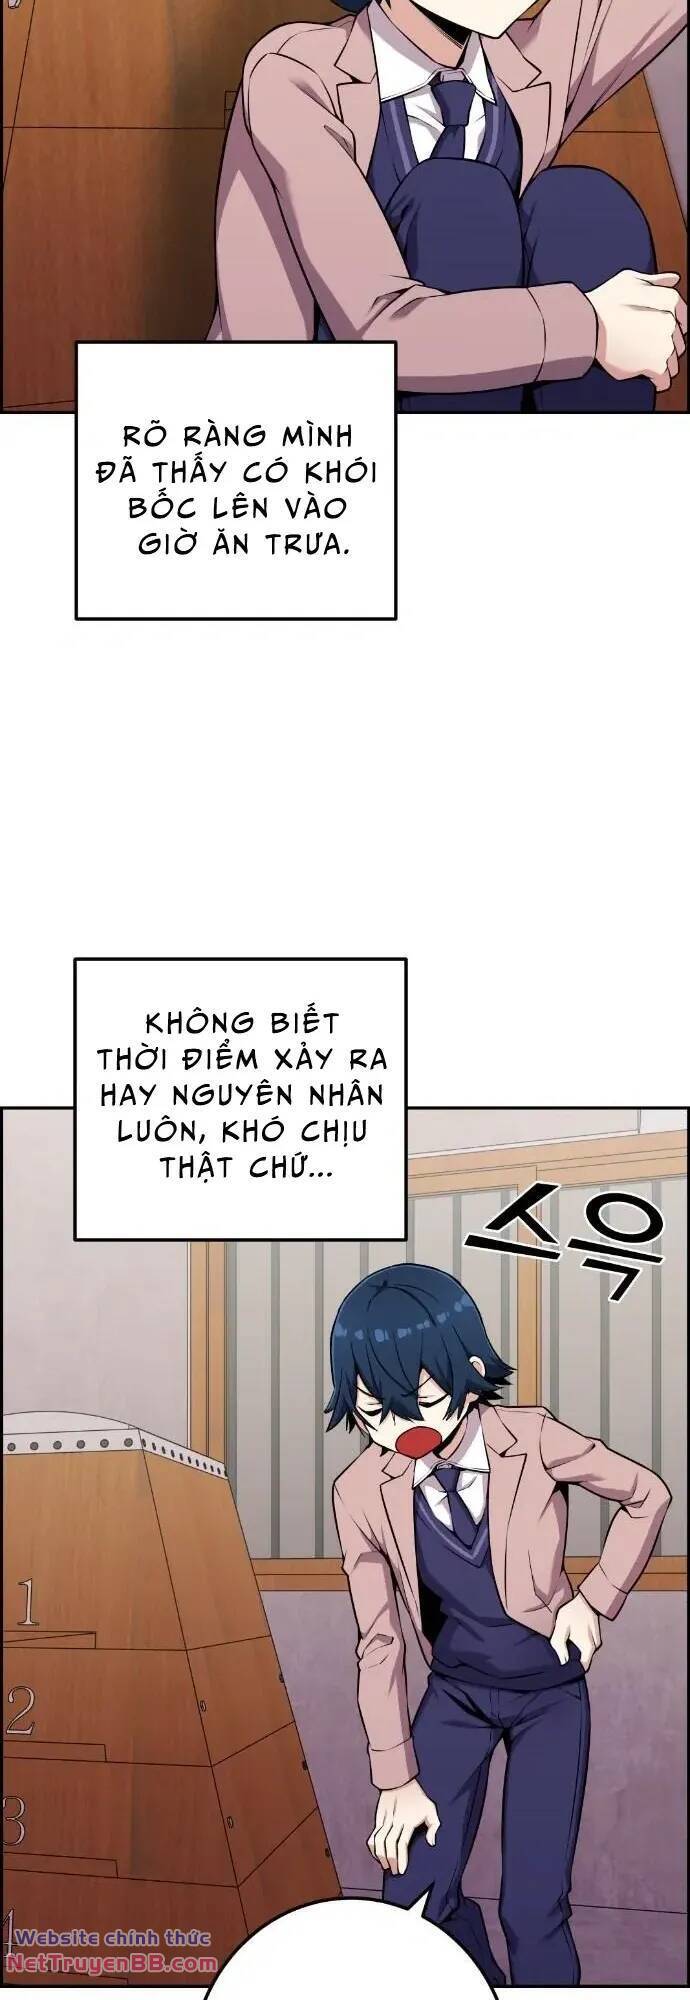 Truyện khủng - Nhân Vật Webtoon Na Kang Lim